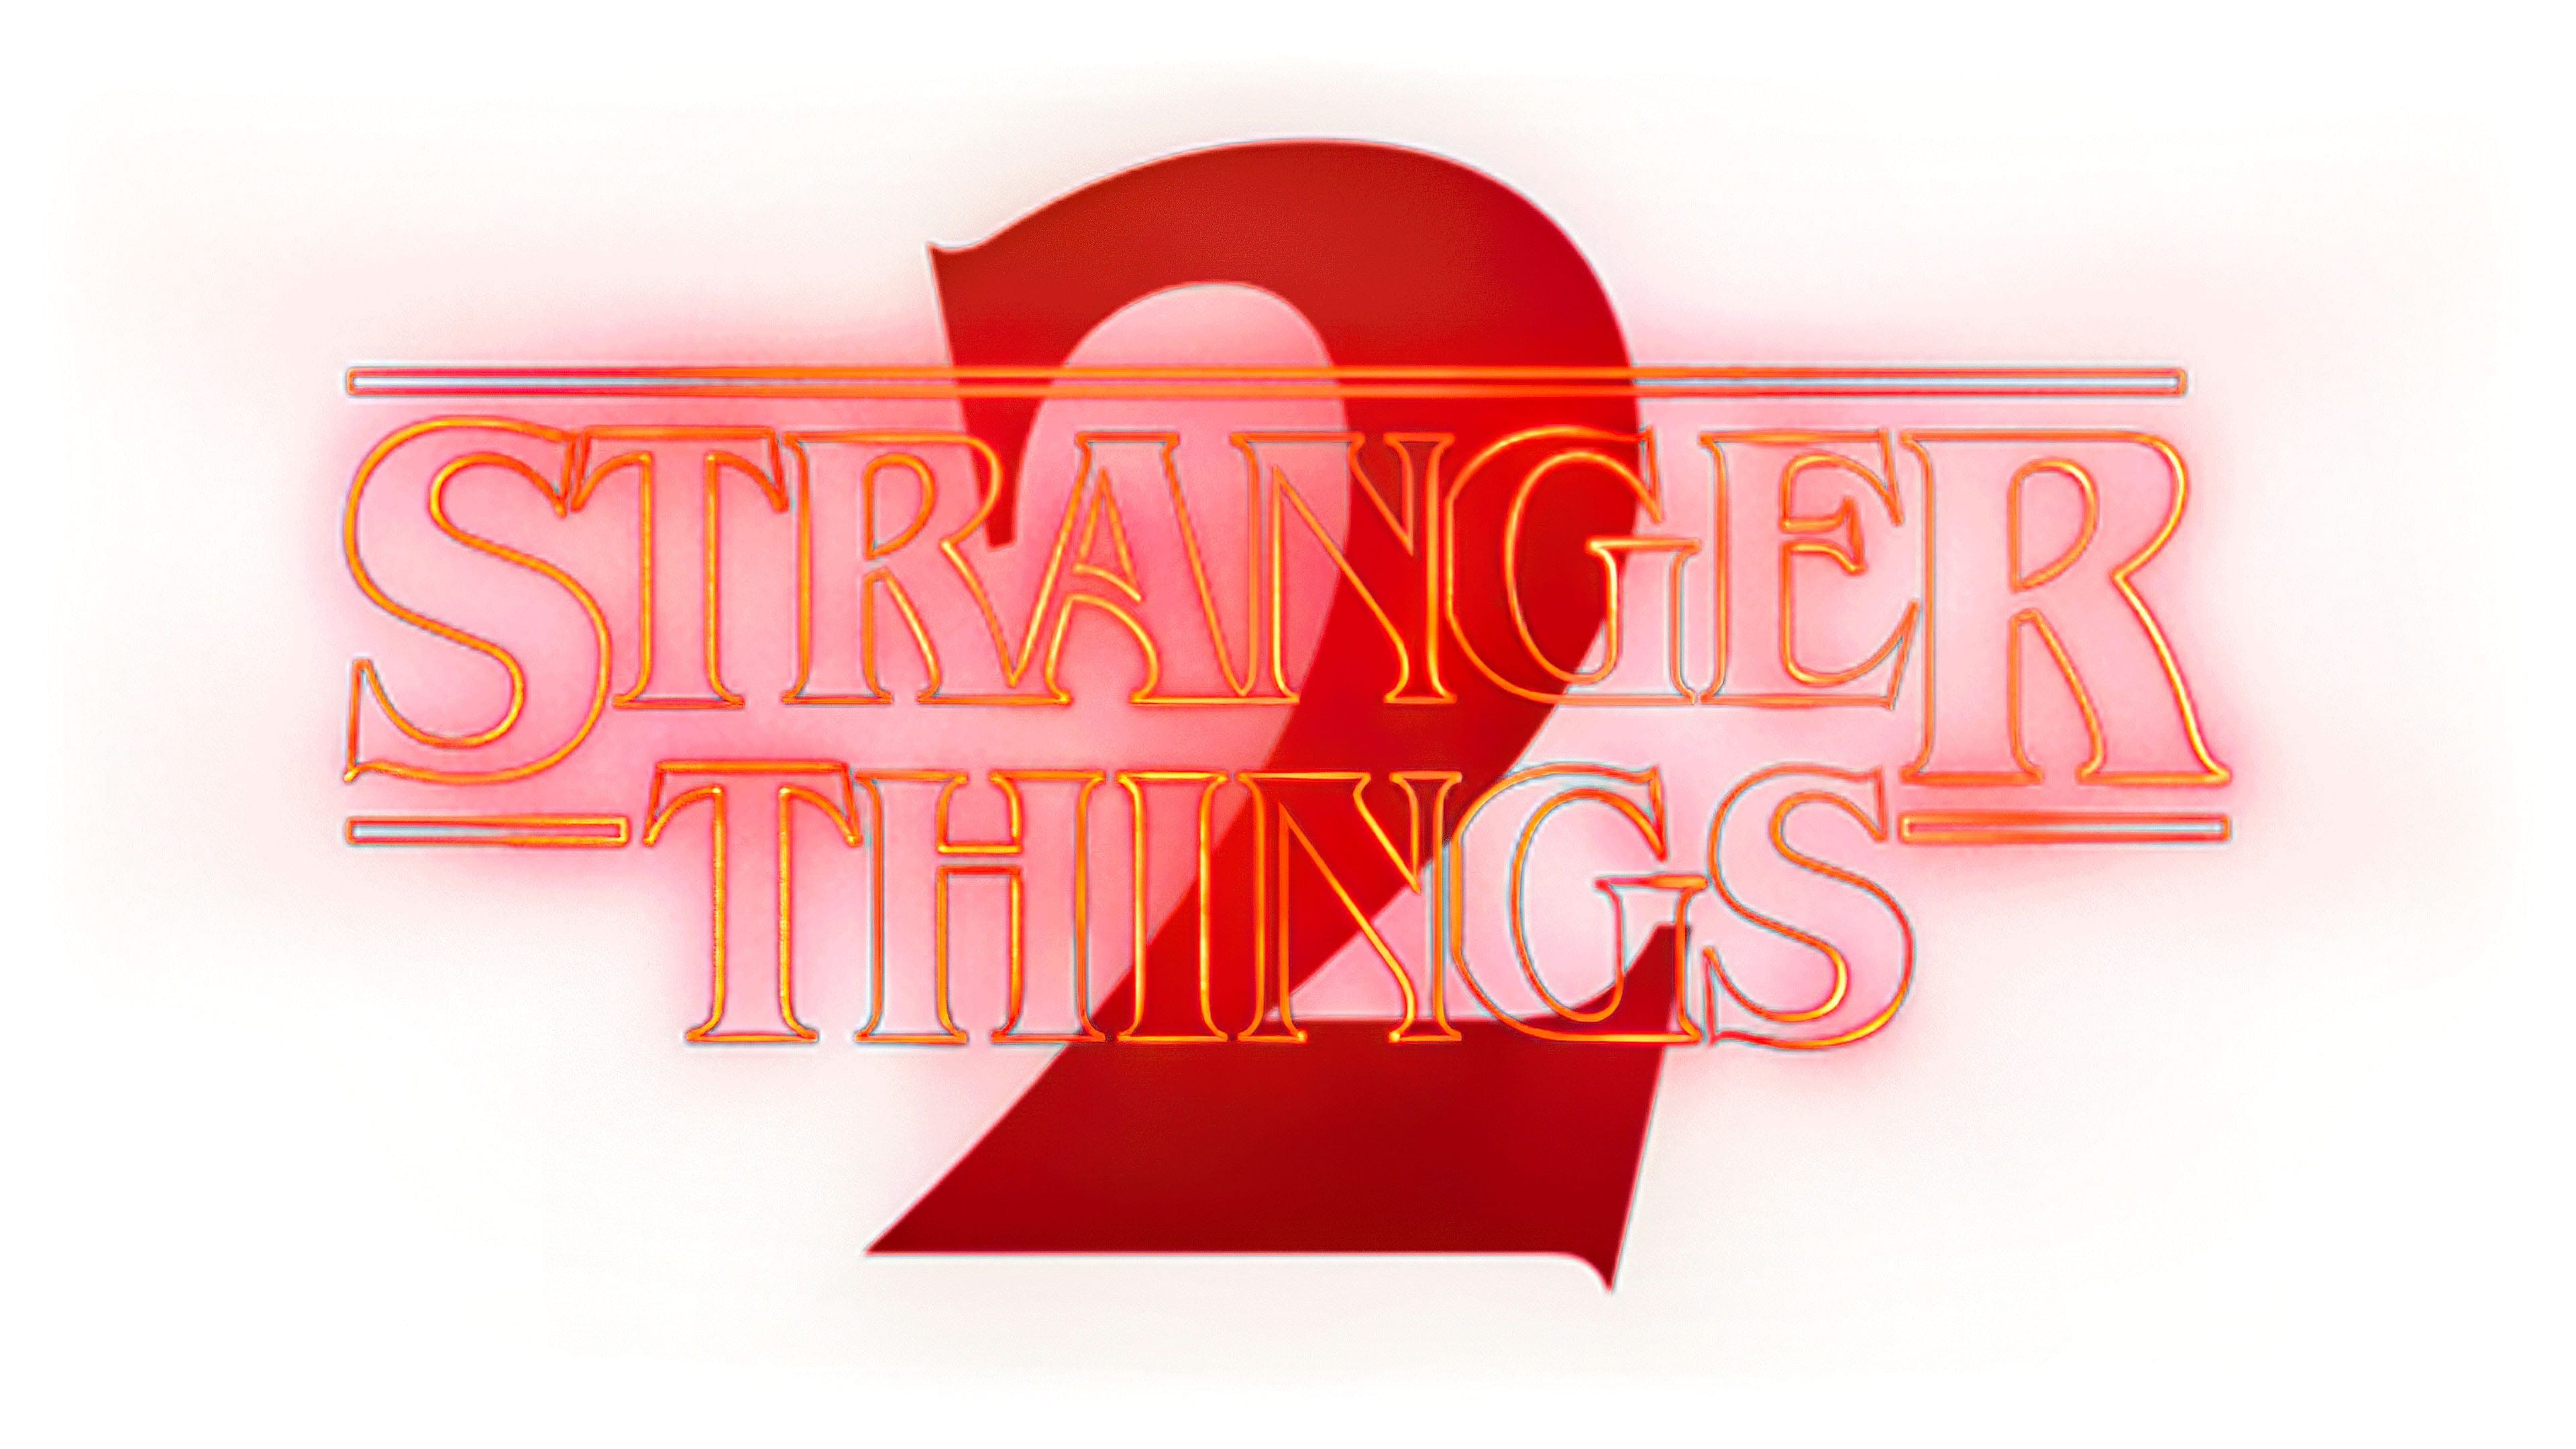 Second thing second. Stranger things лого. Stranger things 2 logo. Надпись stranger things на прозрачном фоне. Stranger things 4 логотип.